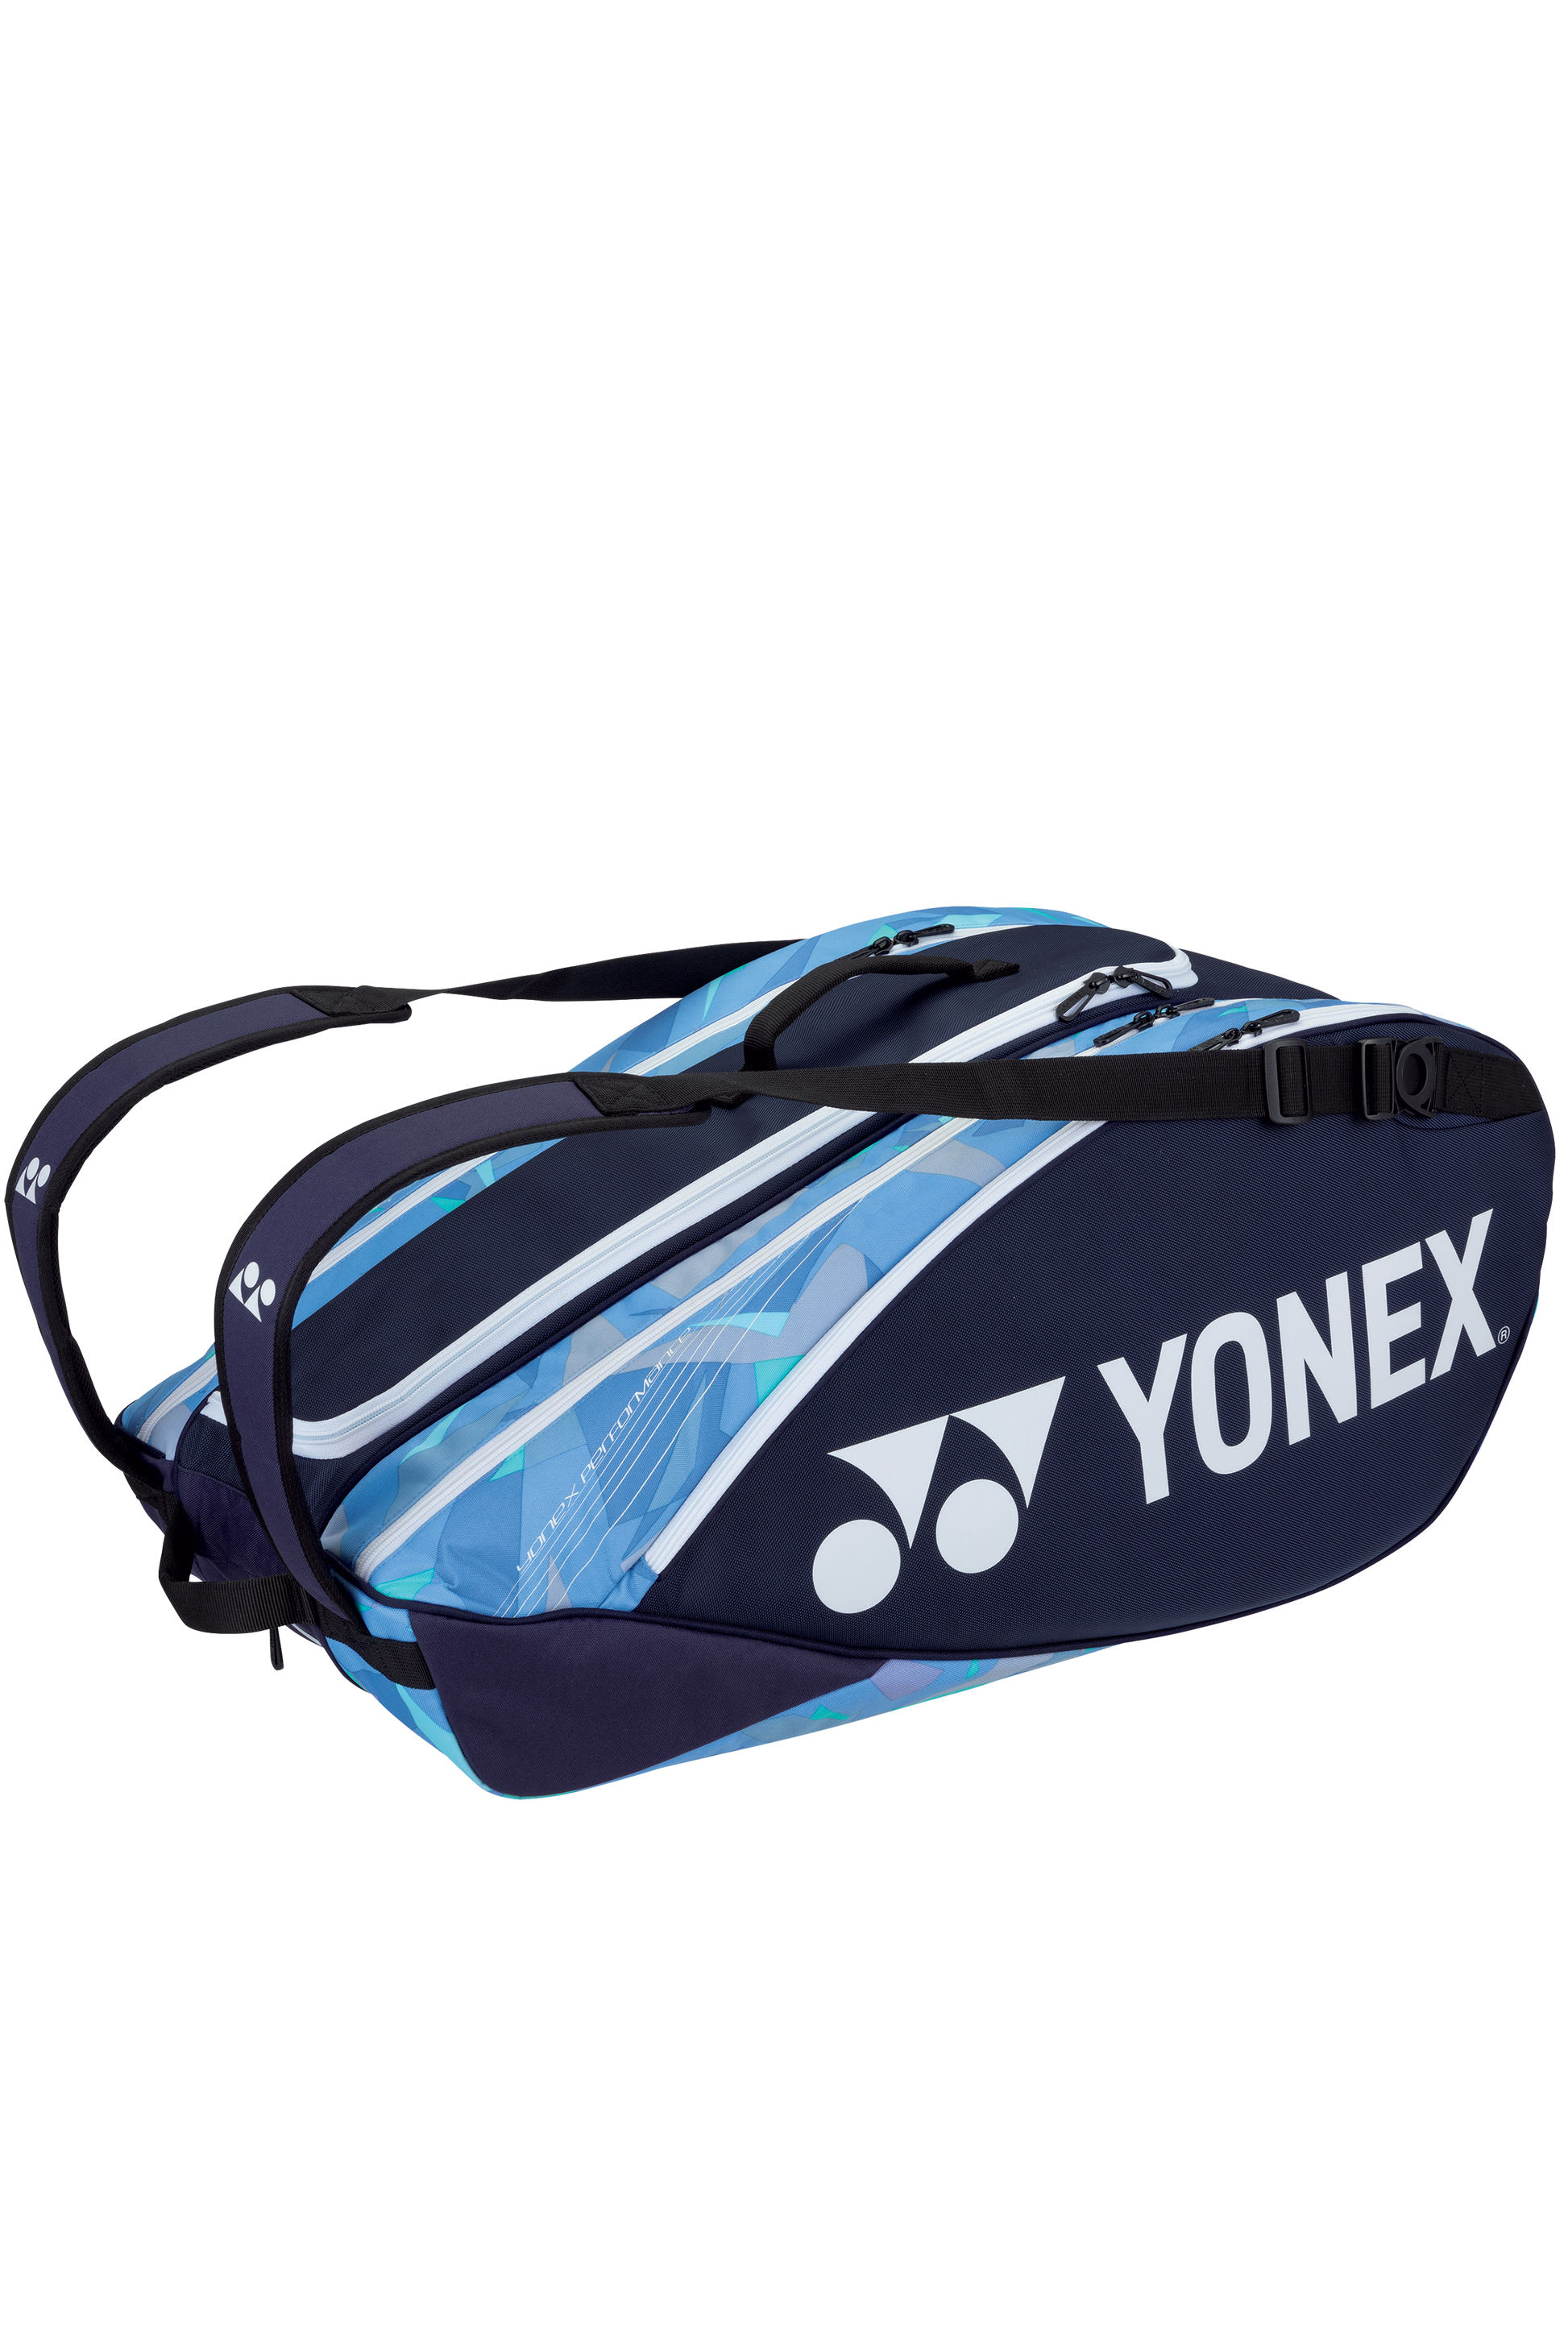 YONEX Pro Bag 92229 (9PCS) [Sax/Navy] - Max Sports